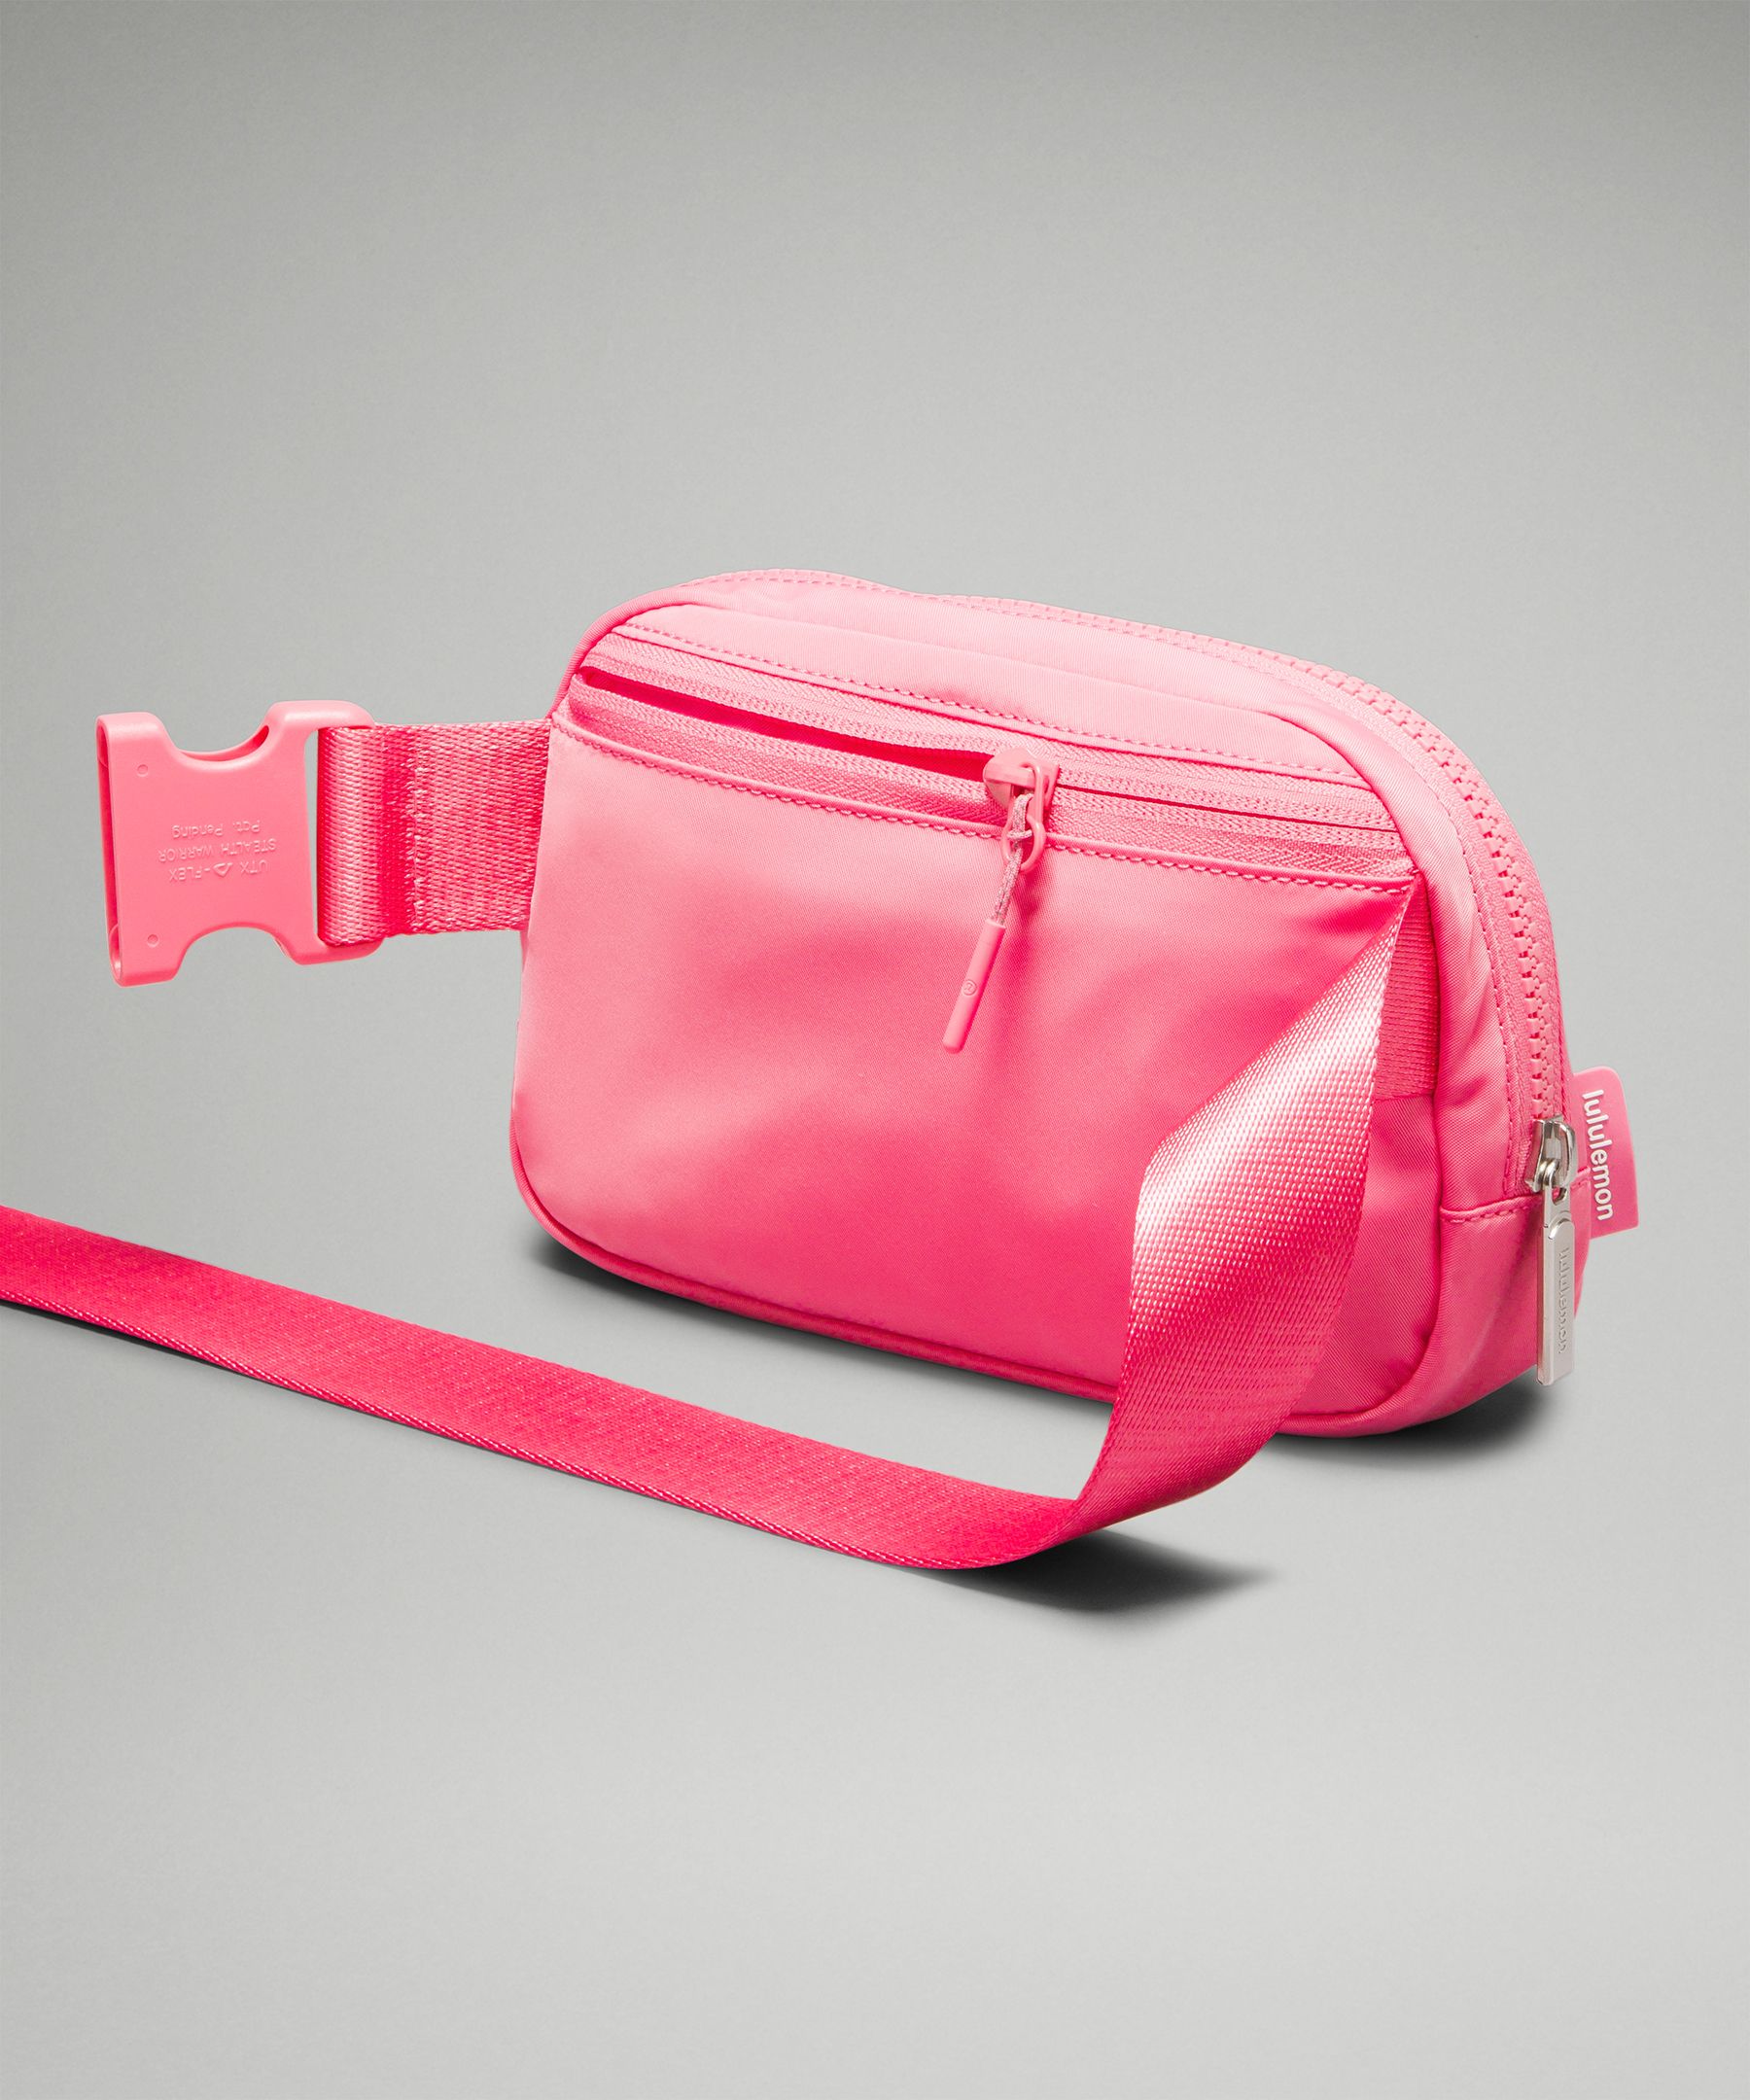 Lululemon Belt Bag Colors 🤩 